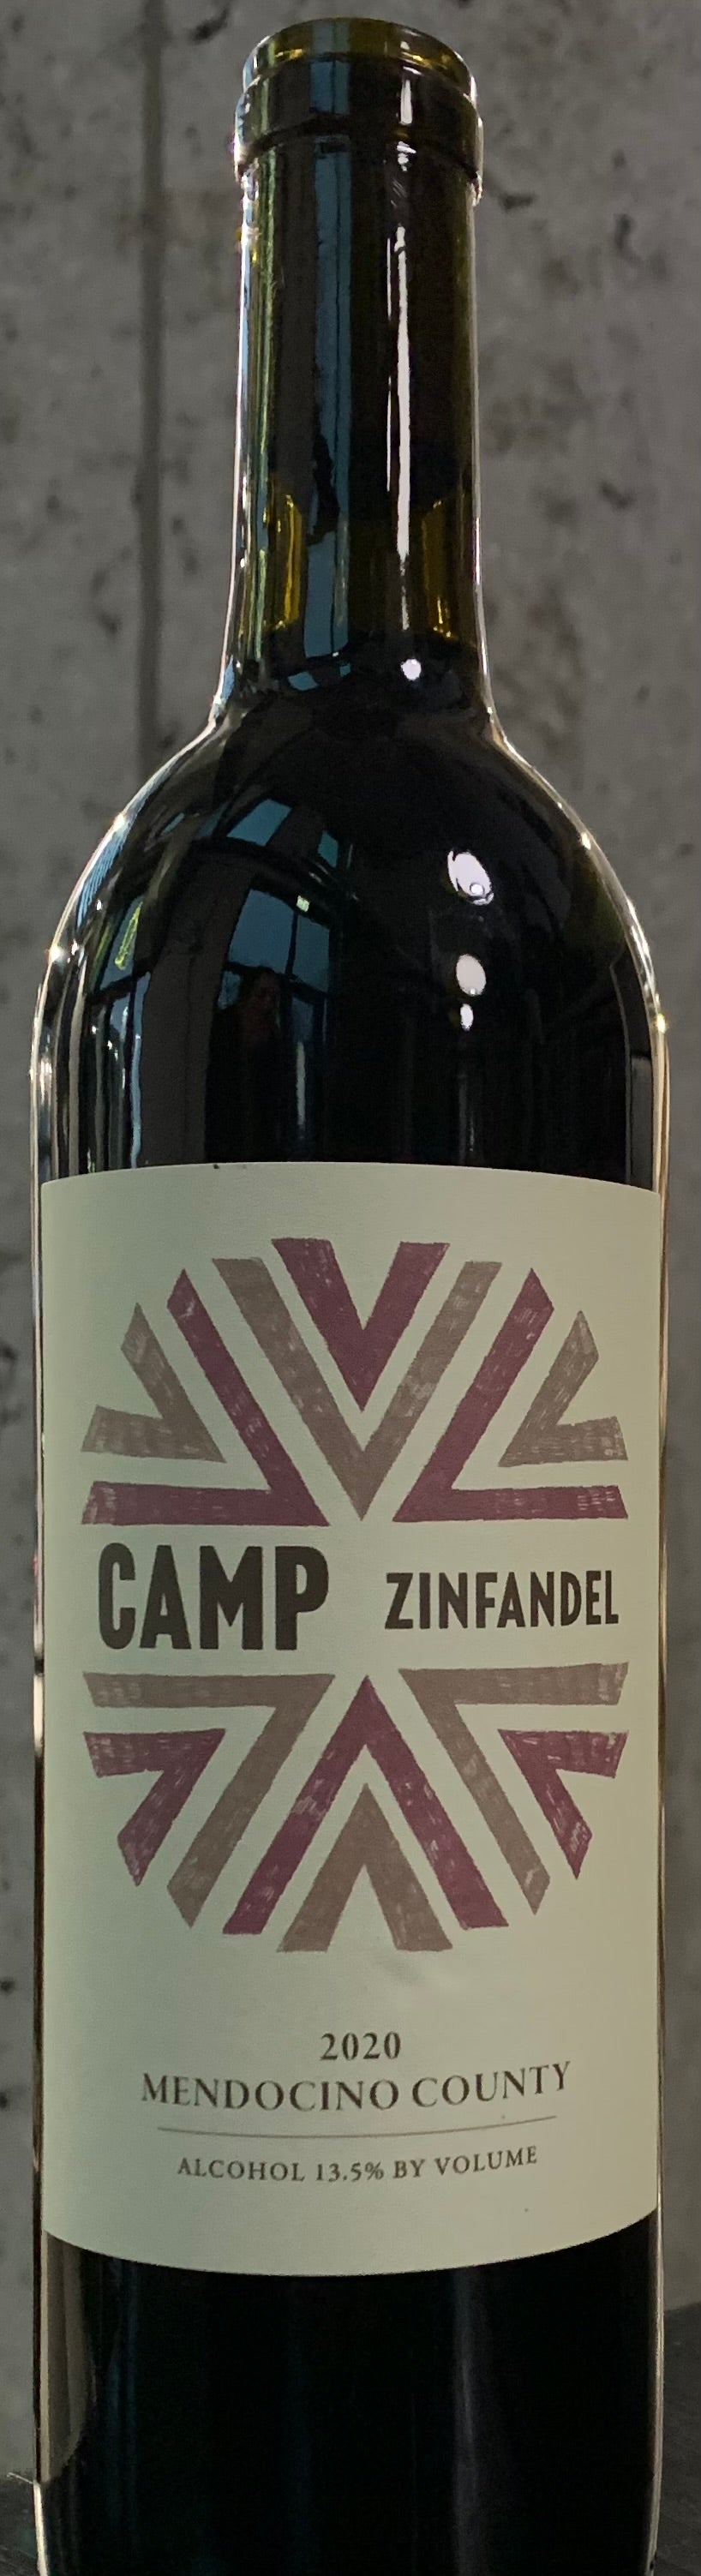 Camp Zinfandel, Mendocino County '20